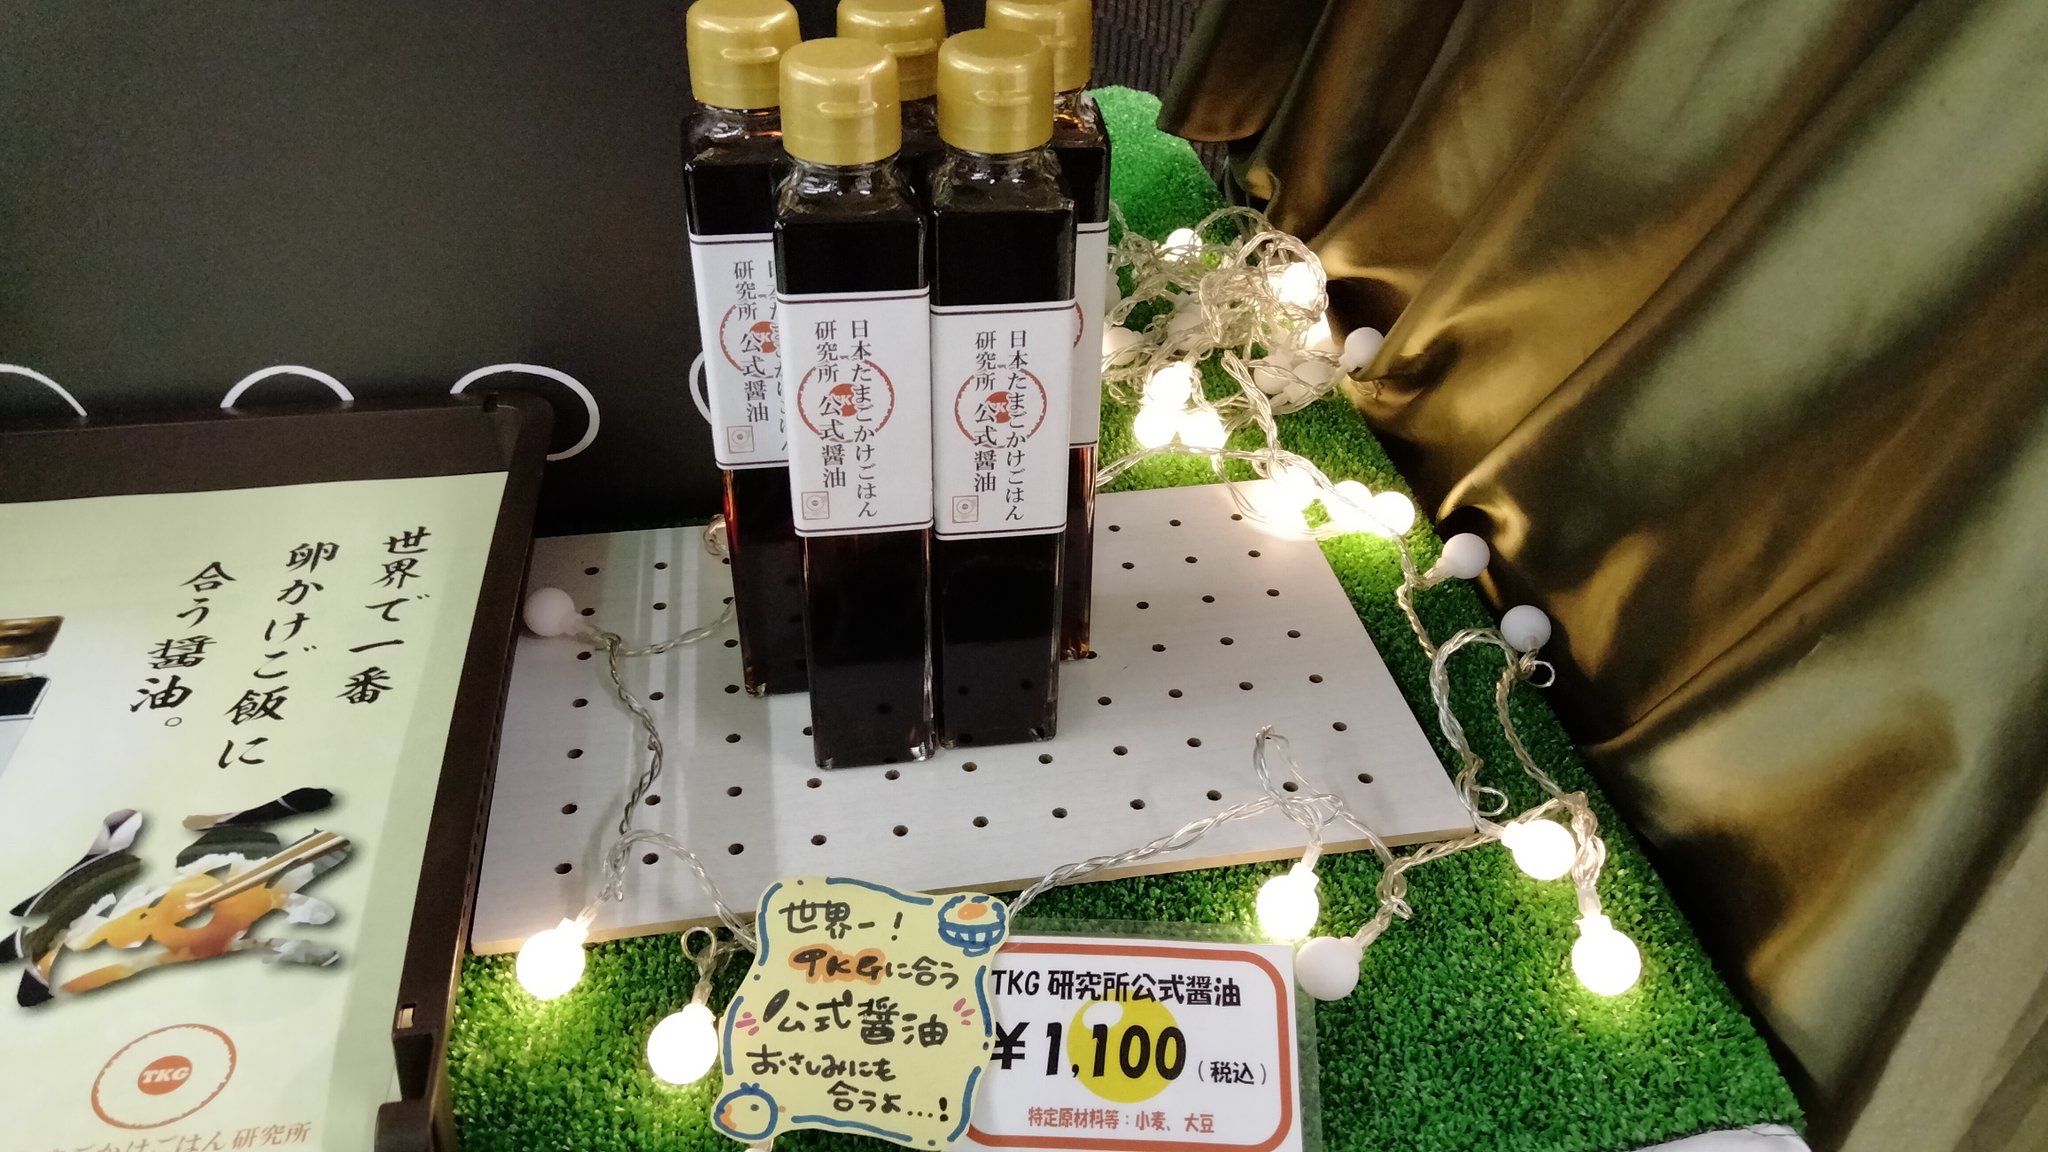 幻の卵屋さんで販売される、日本たまごかけごはん研究所の公式醤油